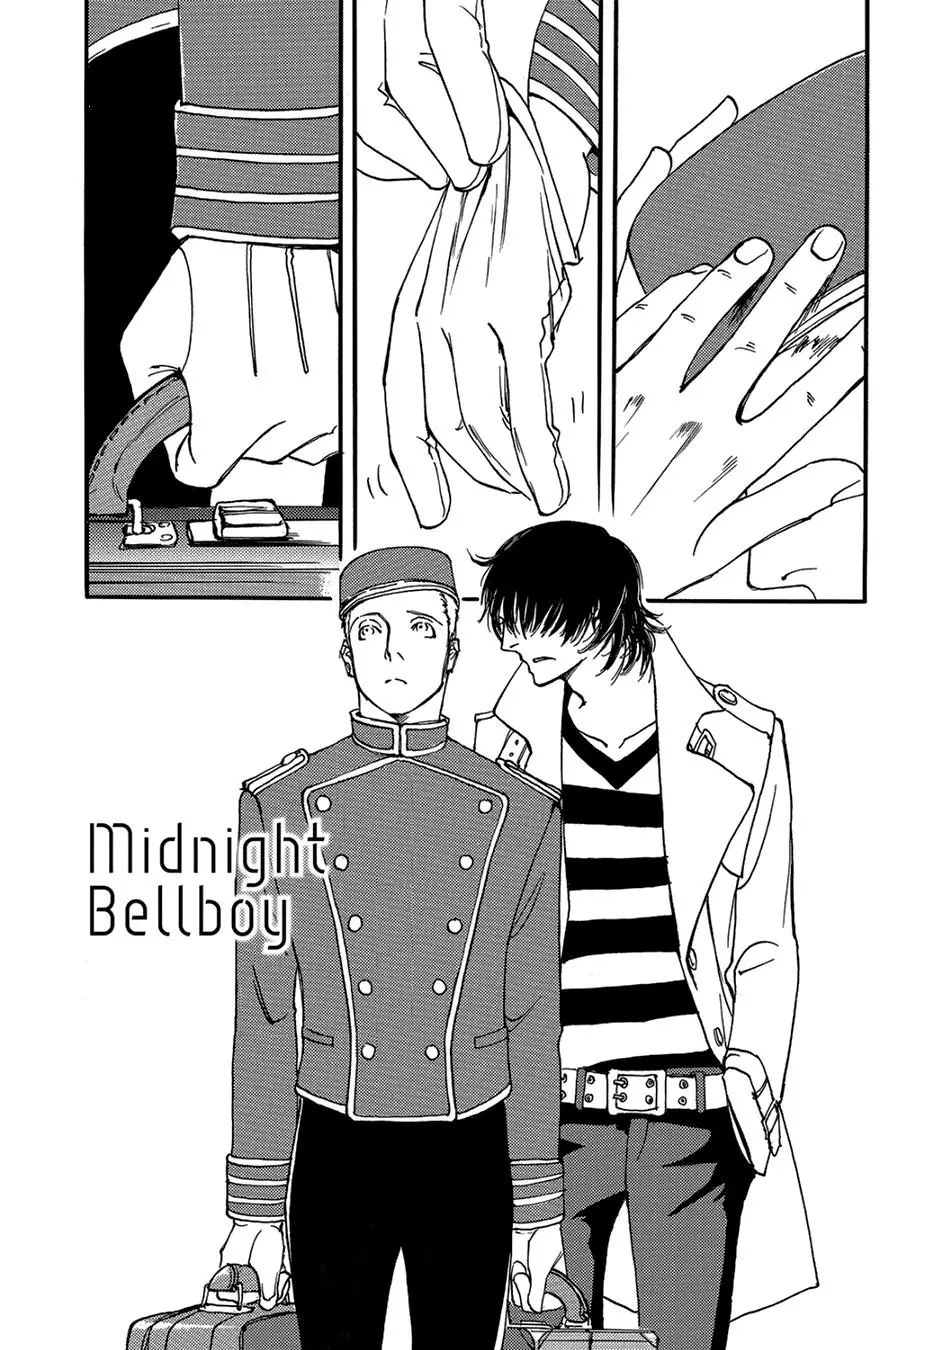 A Midnight Bellboy - 1 page 5-8ba96fcd